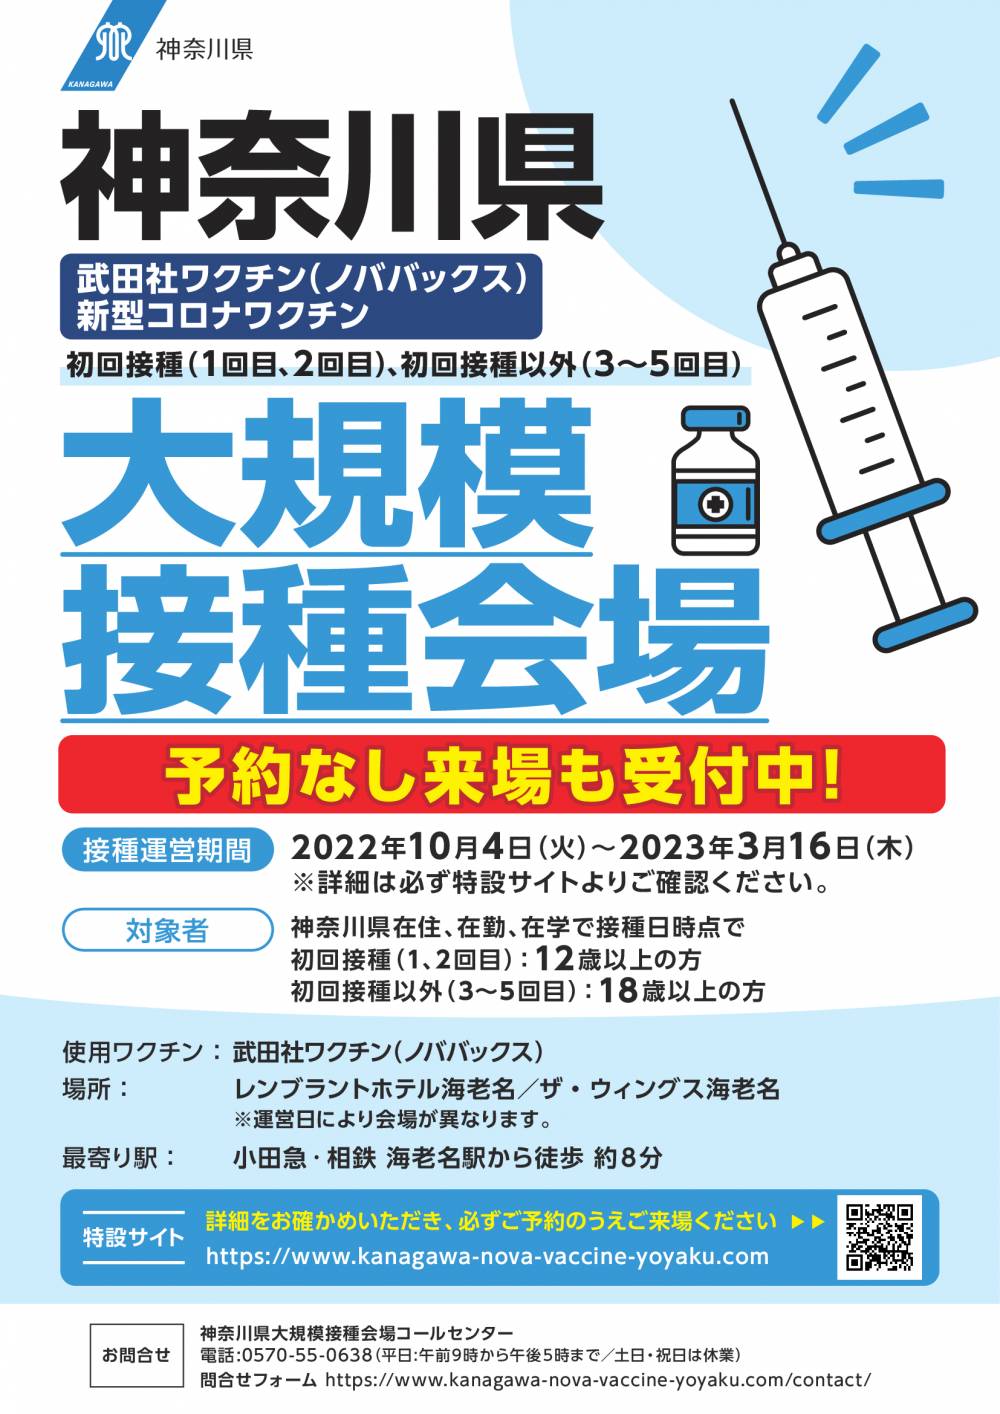 神奈川県大規模接種会場に関するチラシ（武田社ワクチン（ノババックス））上にPDFデータあり